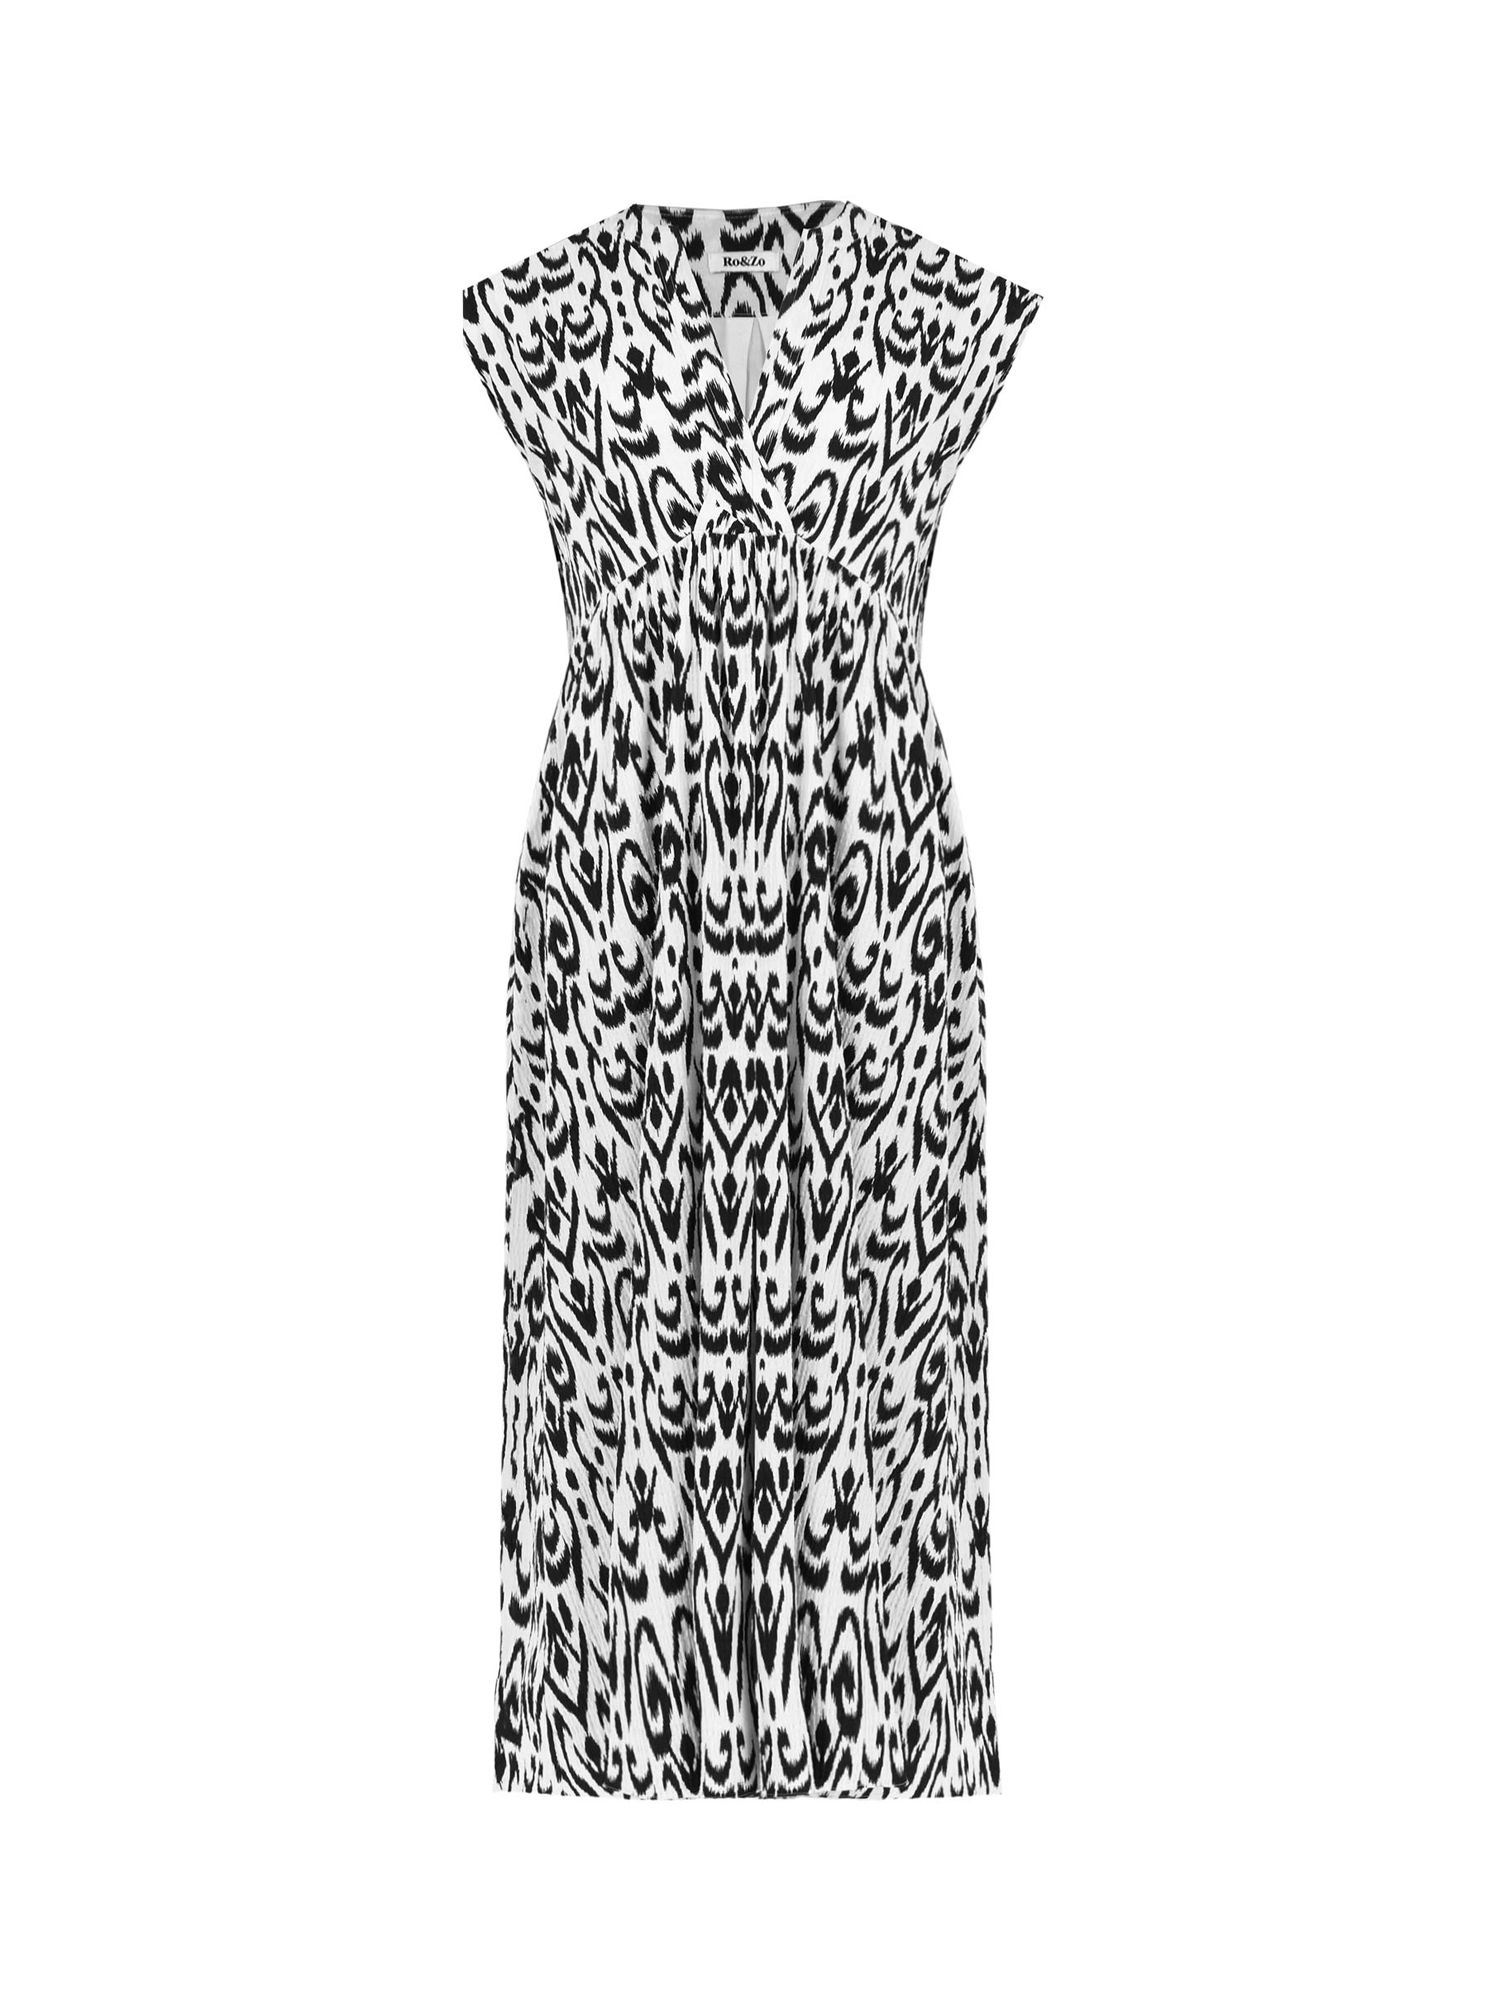 Ro&Zo Aztec Print Wrap Midi Dress, White/Black, 8